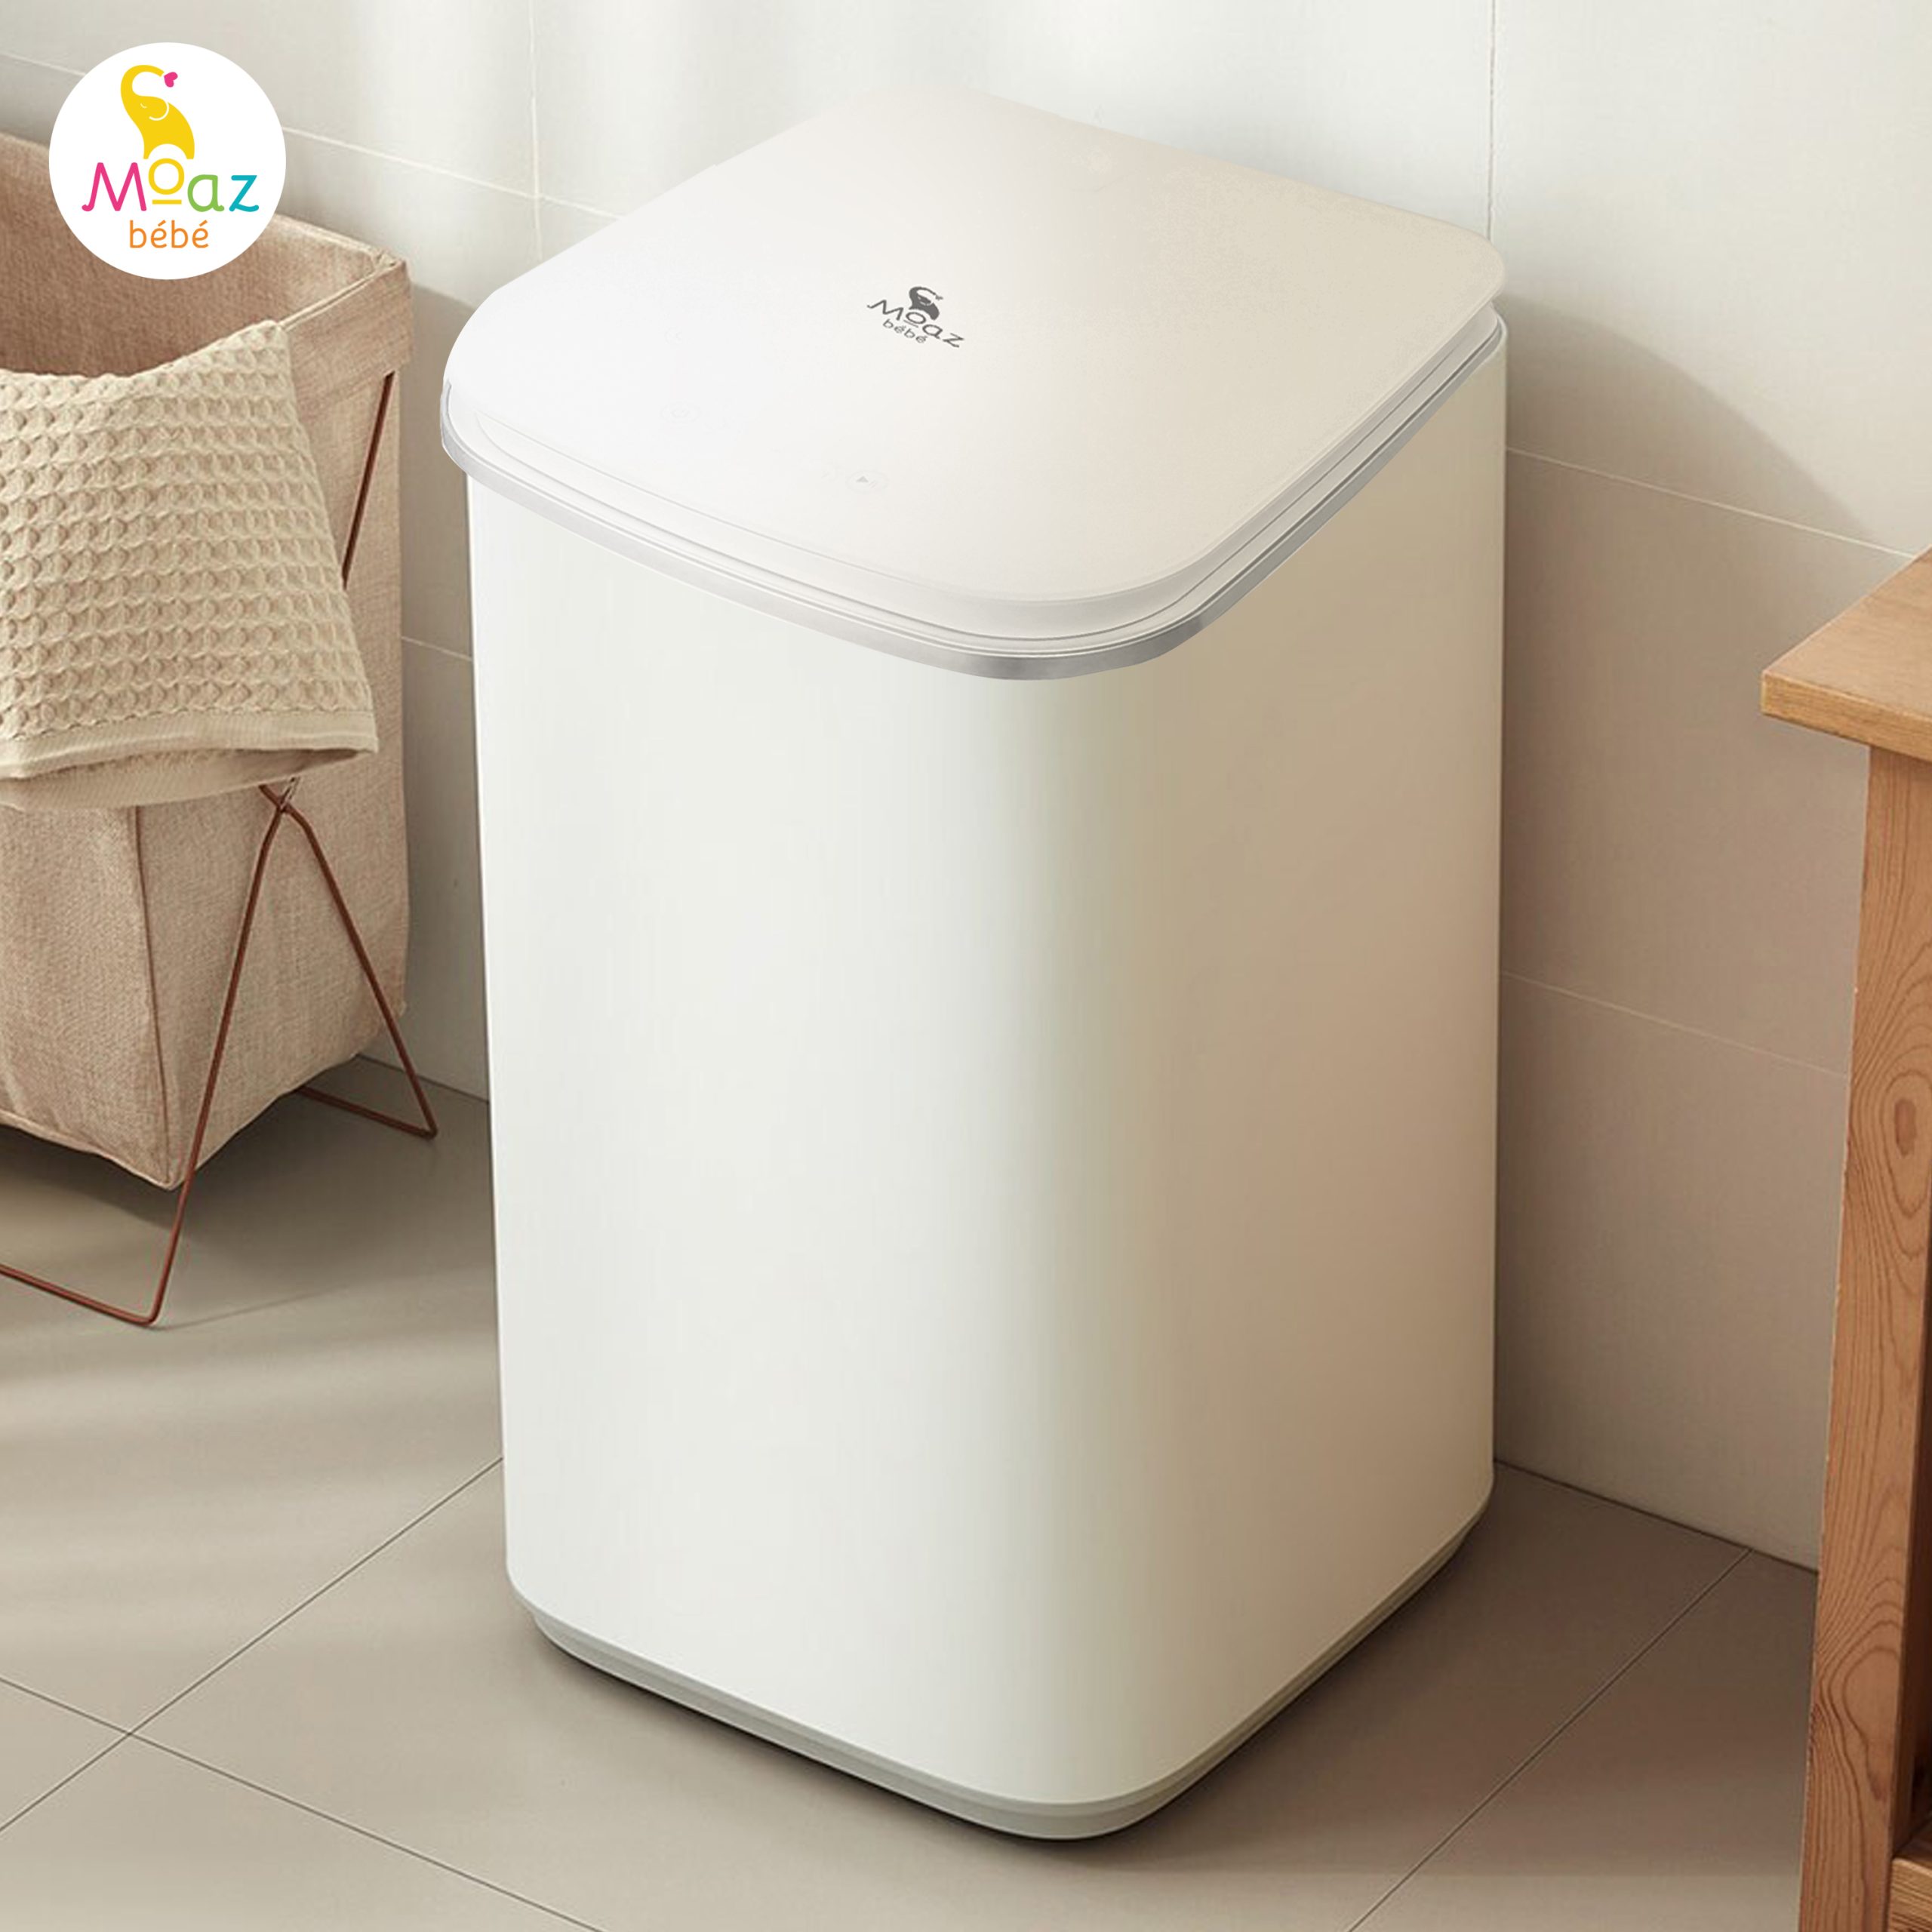 Máy giặt mini Moaz BeBe MB – 036 tiện lợi cho các gia đình có trẻ nhỏ